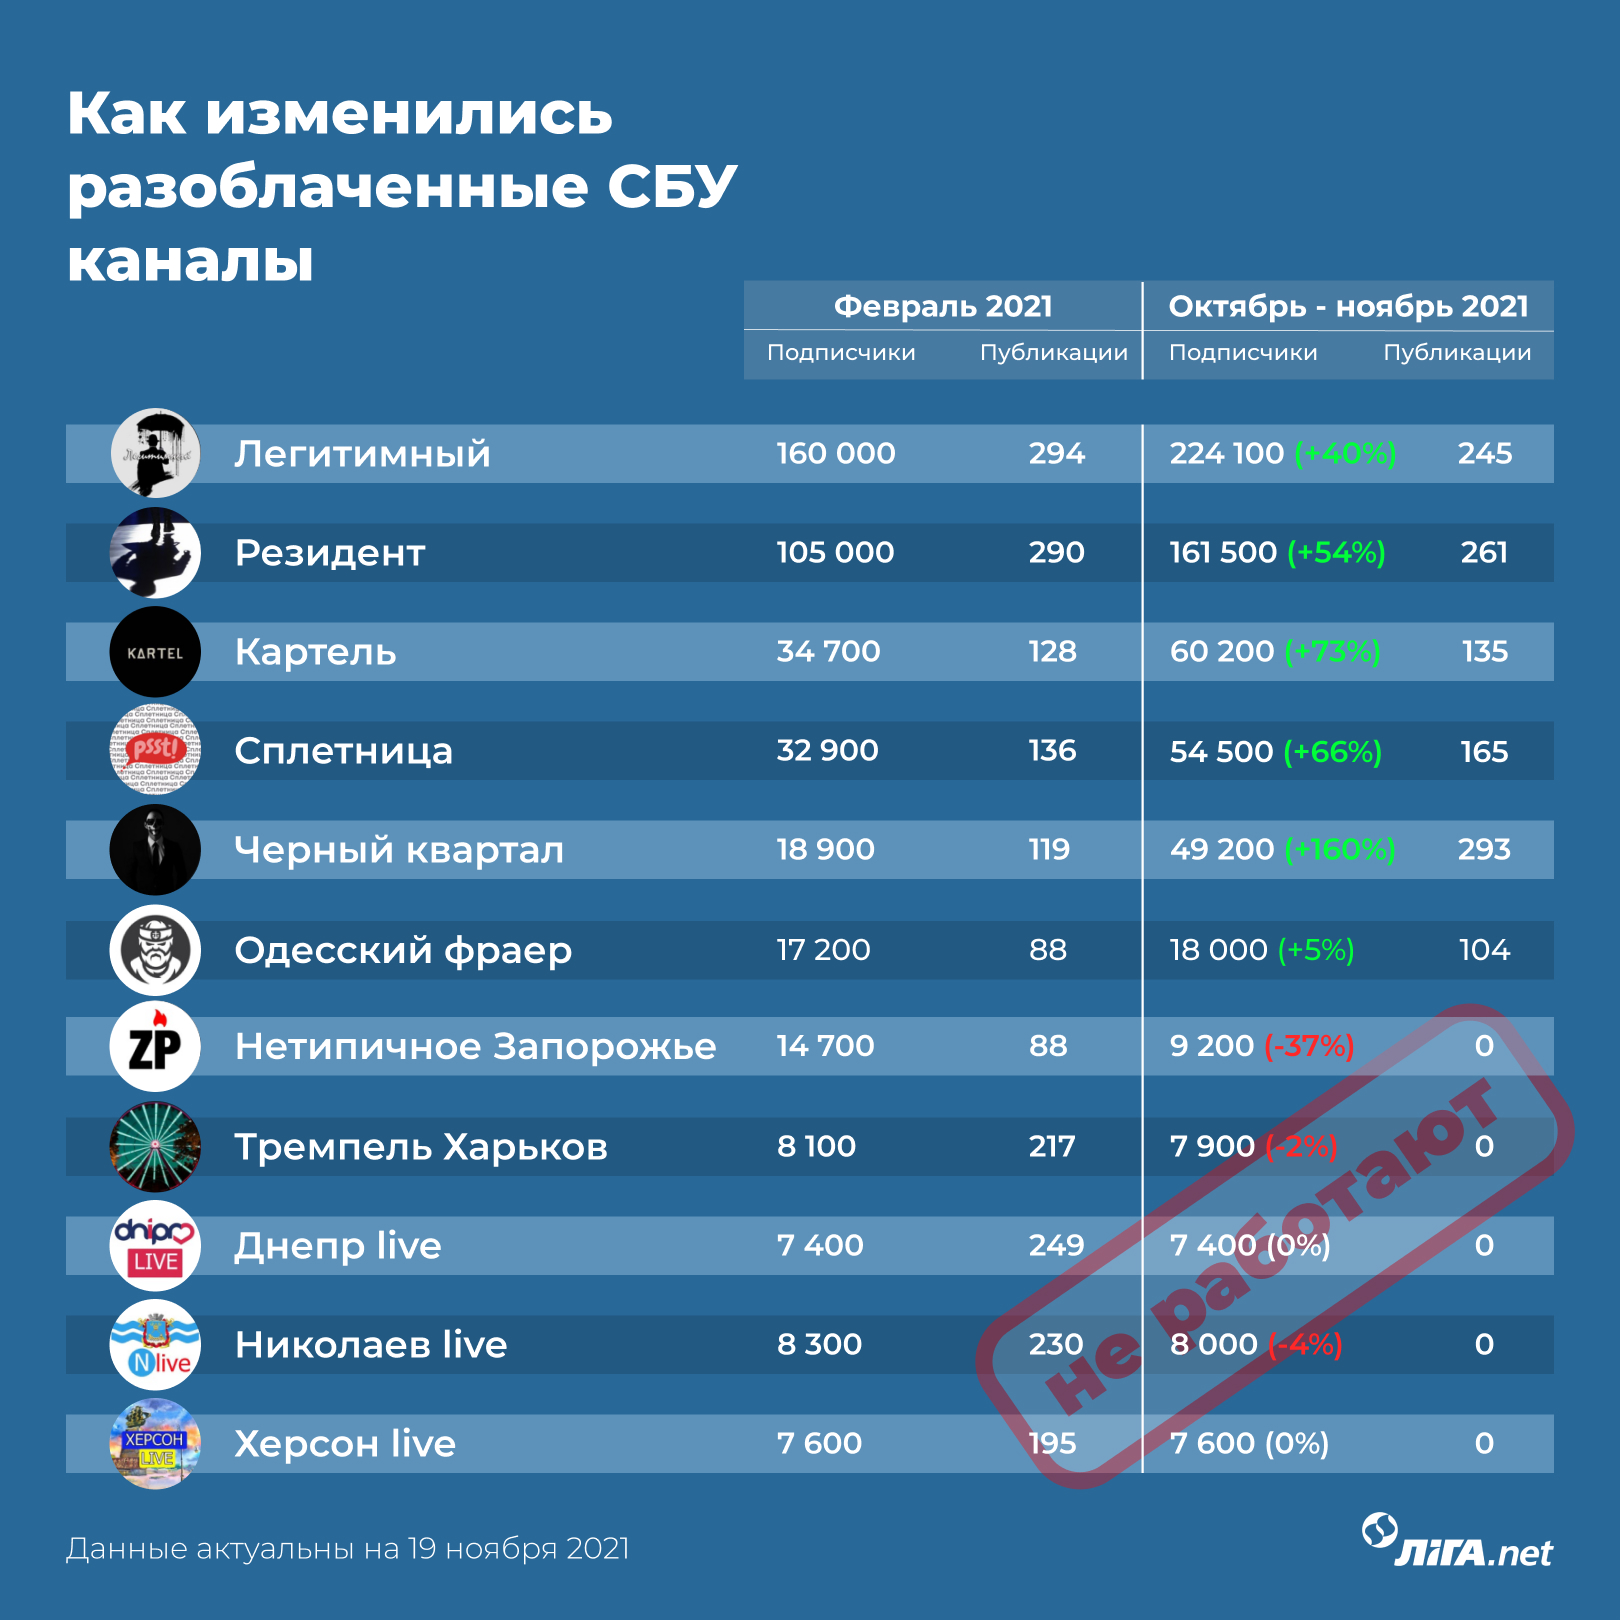 Империя ГРУ. Как устроена и как влияет на Украину сеть Telegram-каналов, вскрытая СБУ